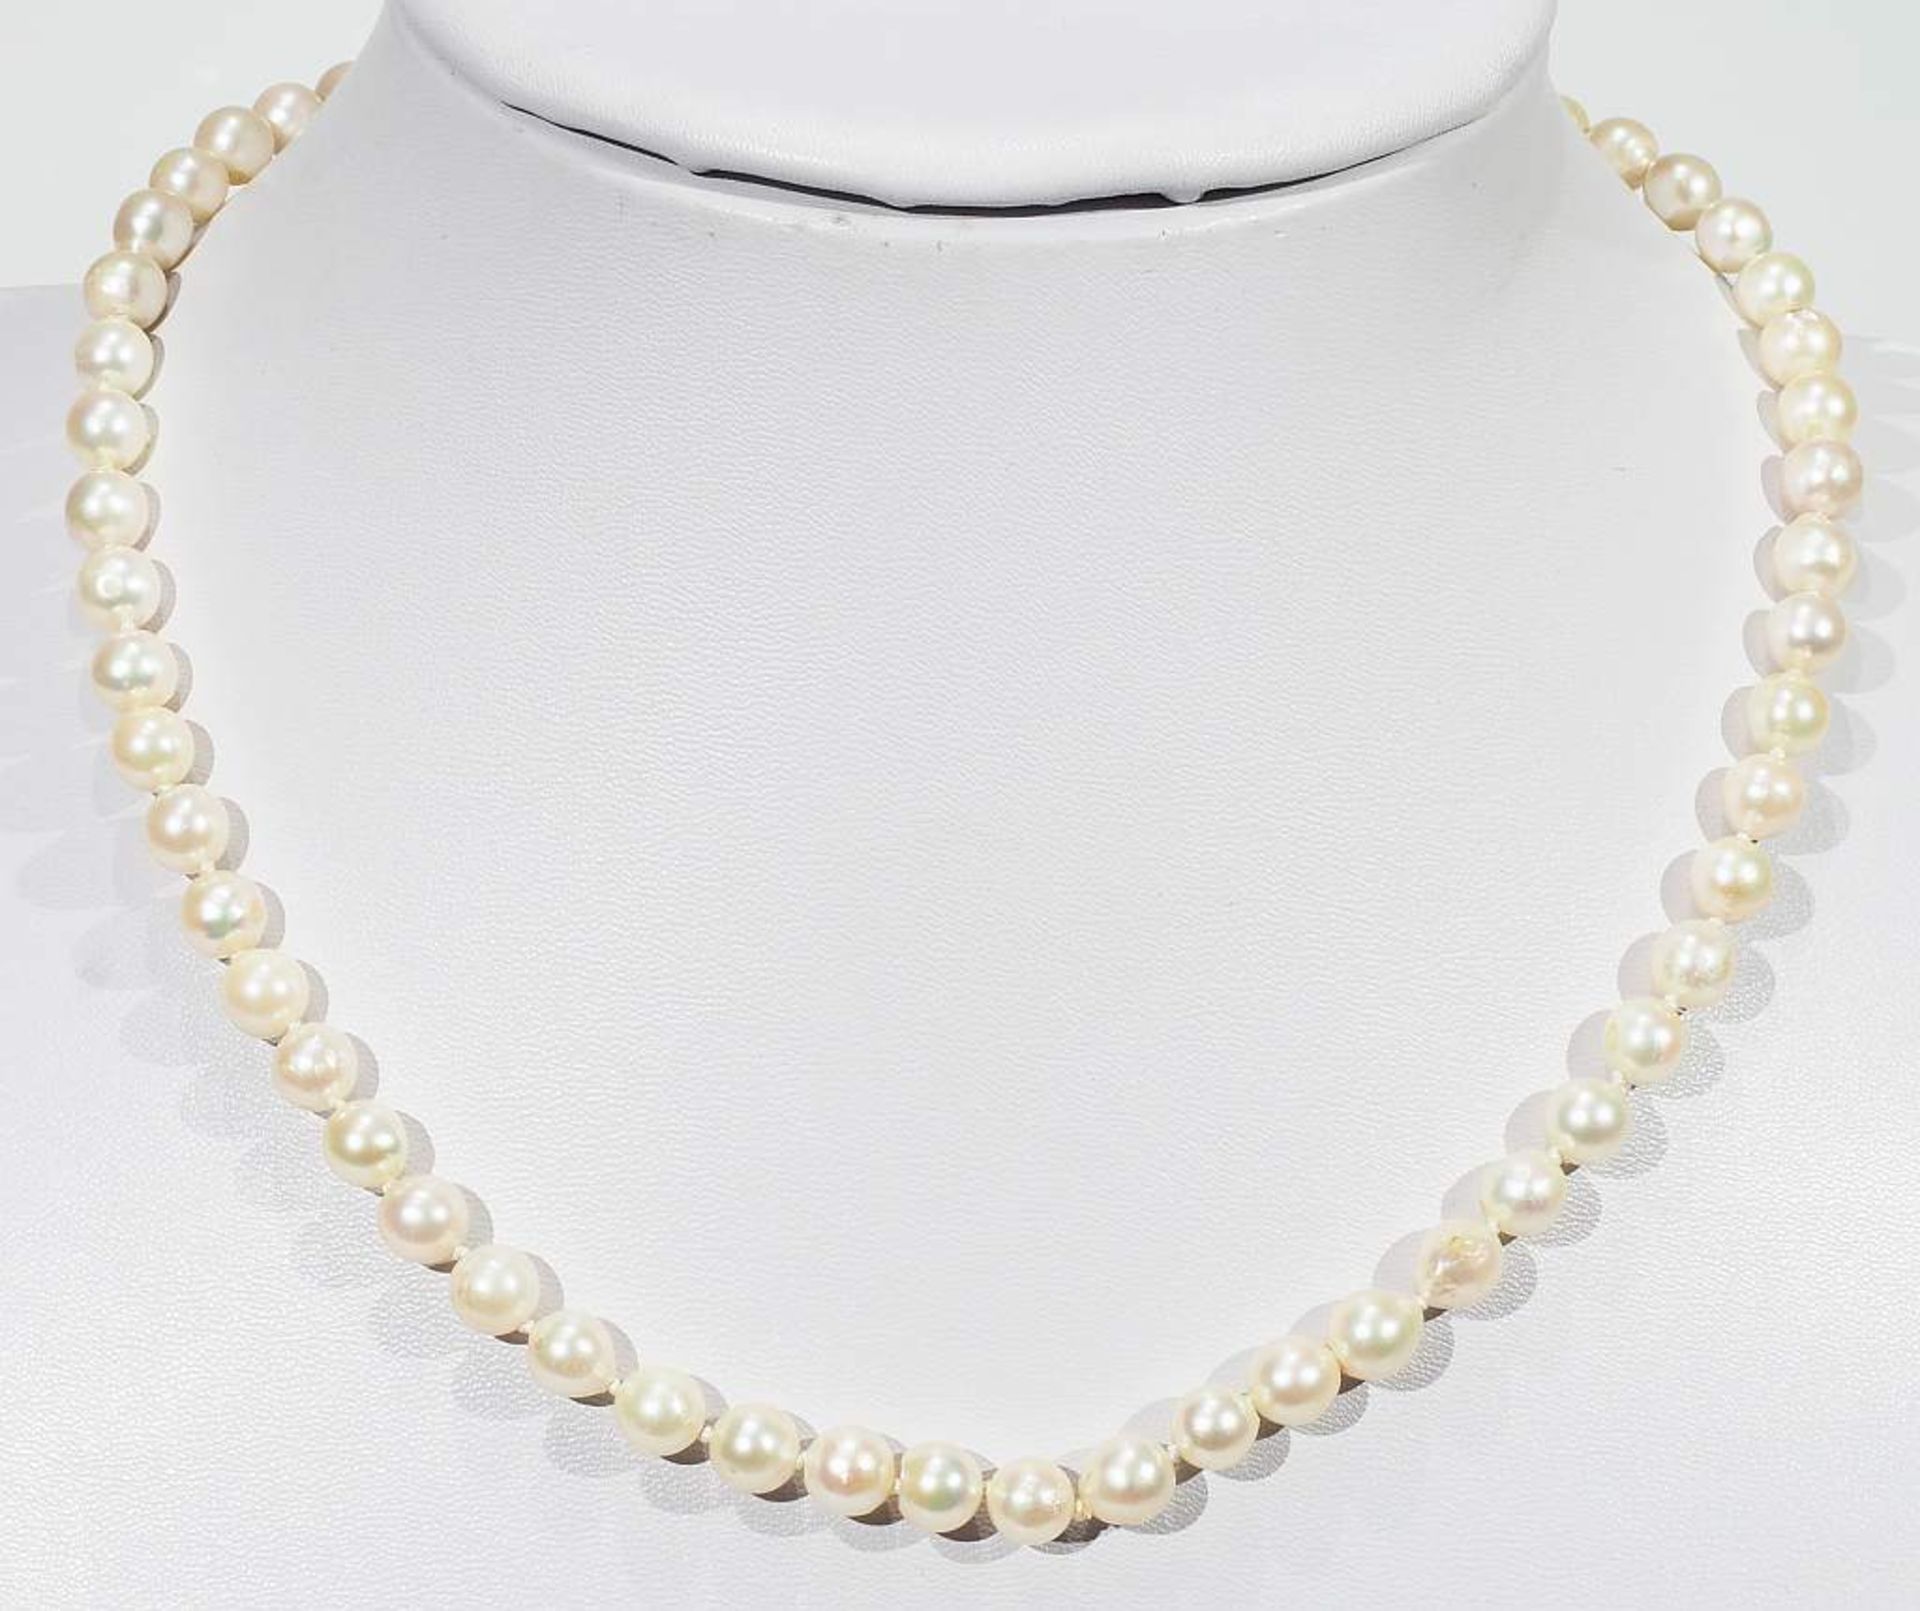 Akoya Zuchtperlenkette, einzeln verknotet. Ø der Perle ca. 6,7 mm, Länge der Kette ca. 46 cm. - Bild 2 aus 6